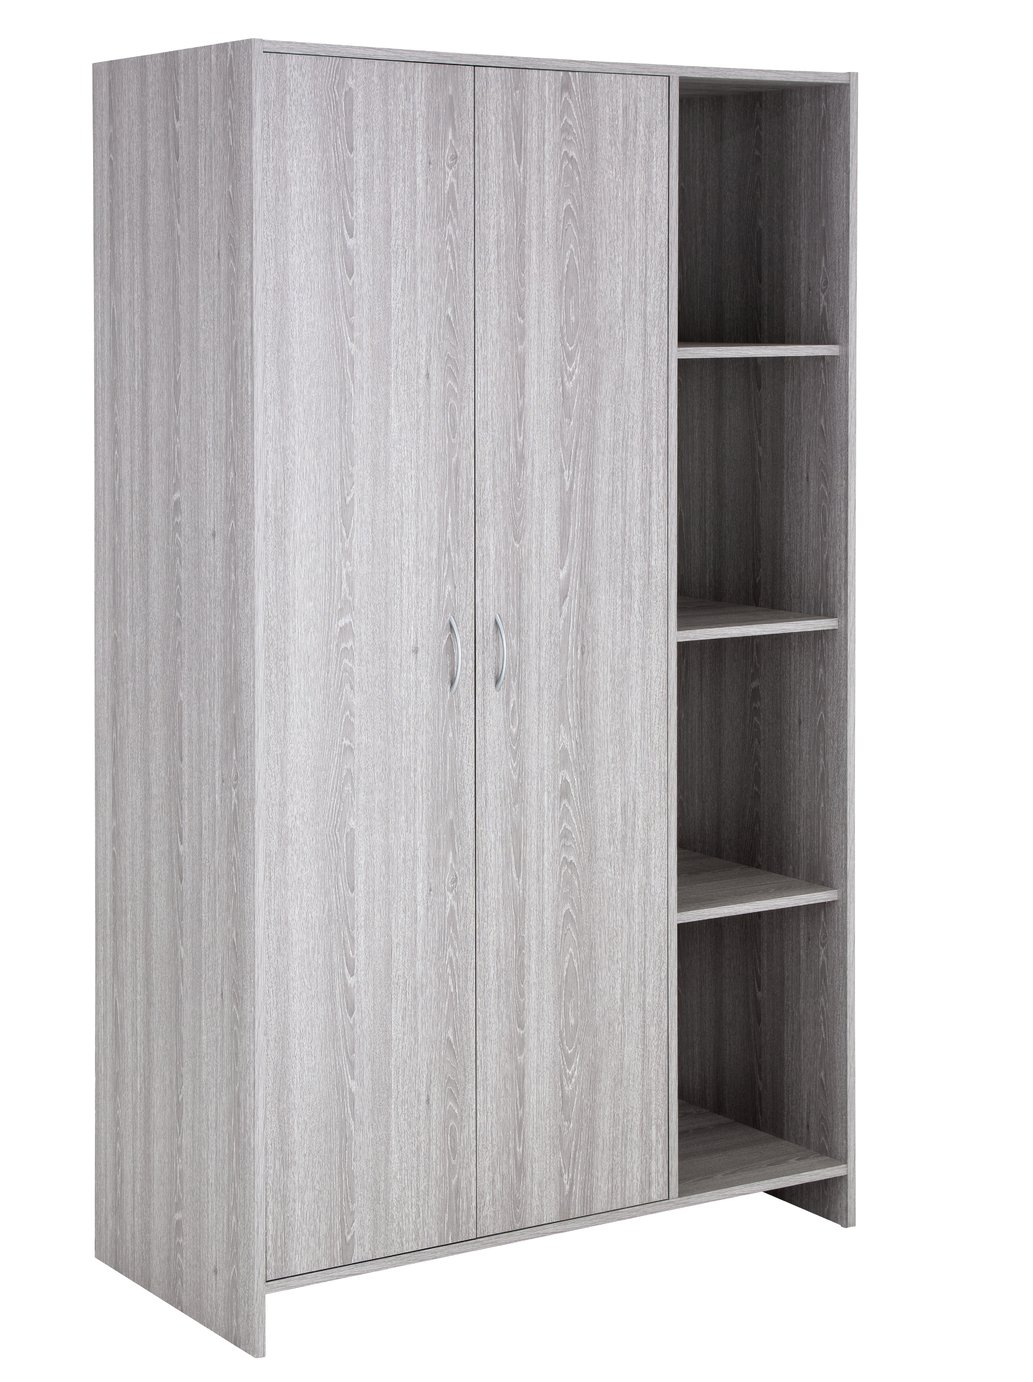 Argos Home Seville 2 Dr Open Shelf Wardrobe -Grey Oak Effect Review